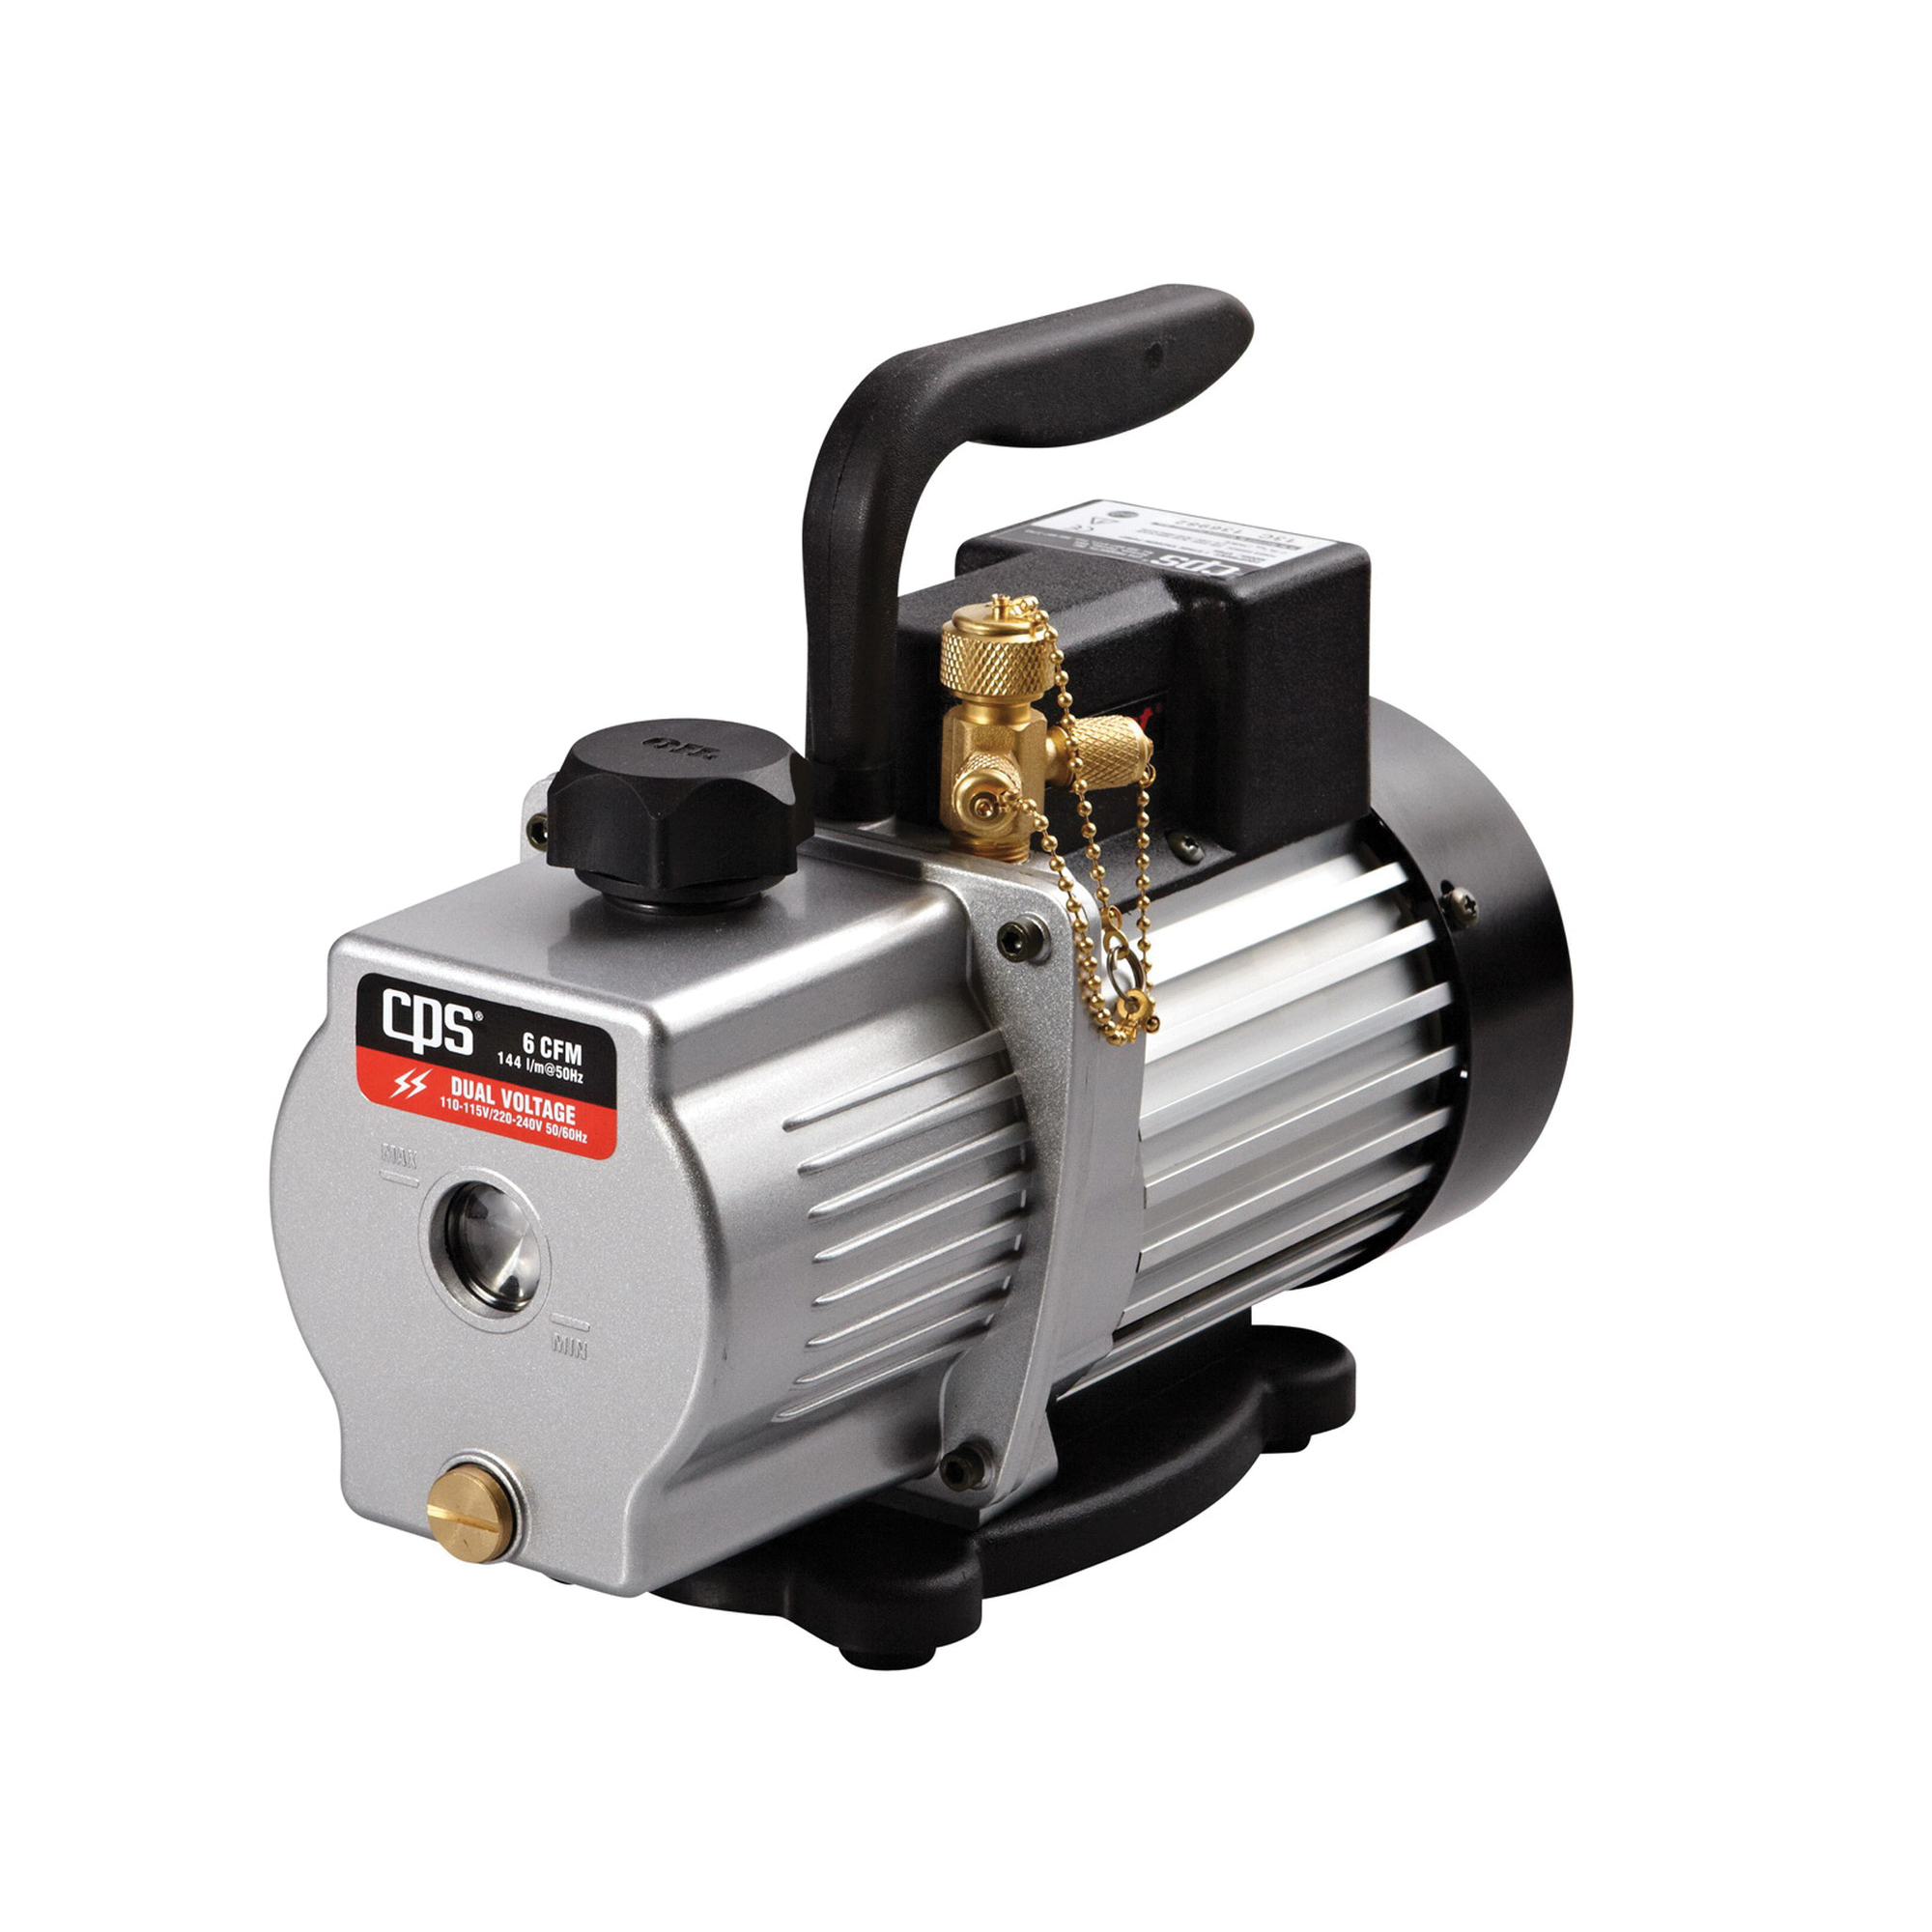 CPS® Pro-Set Premium VP6S 1-Stage Vacuum Pump, 110 - 120/220 VAC, 1/2 hp, 6 cfm, 50 um Max Vacuum